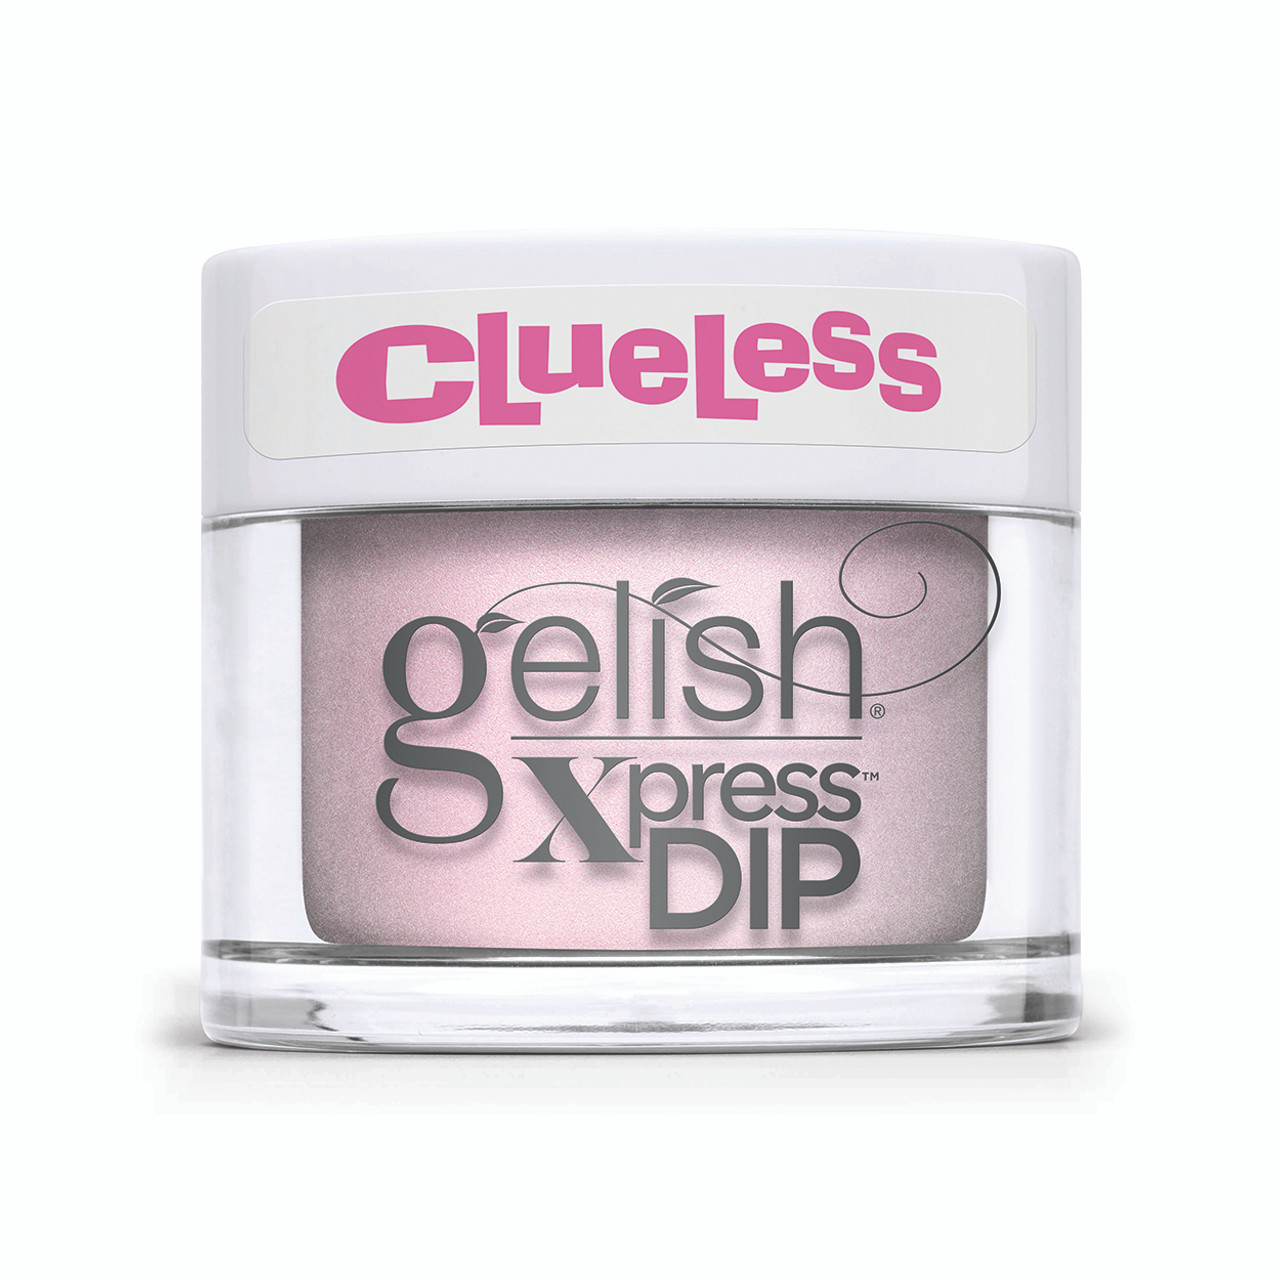 Gelish Xpress Dip Highly Selective - 1.5 oz / 43 g